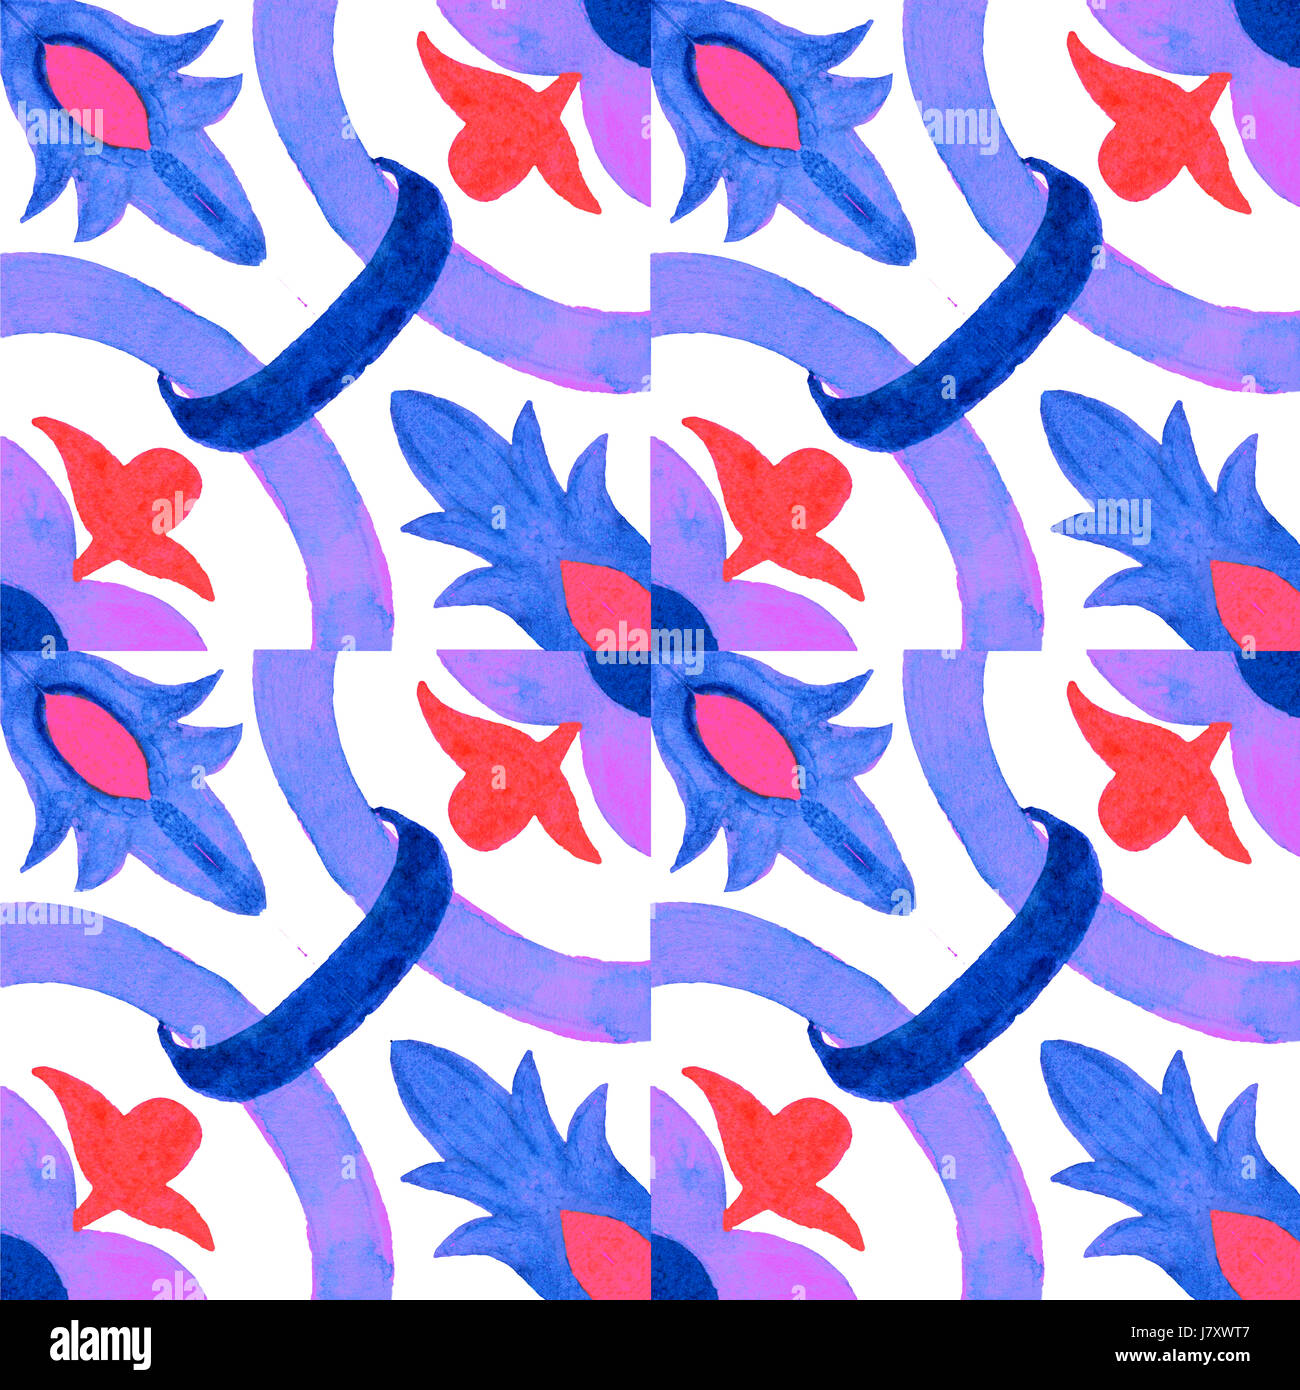 Tuiles azulejo portugais. Motif transparent aquarelle Banque D'Images